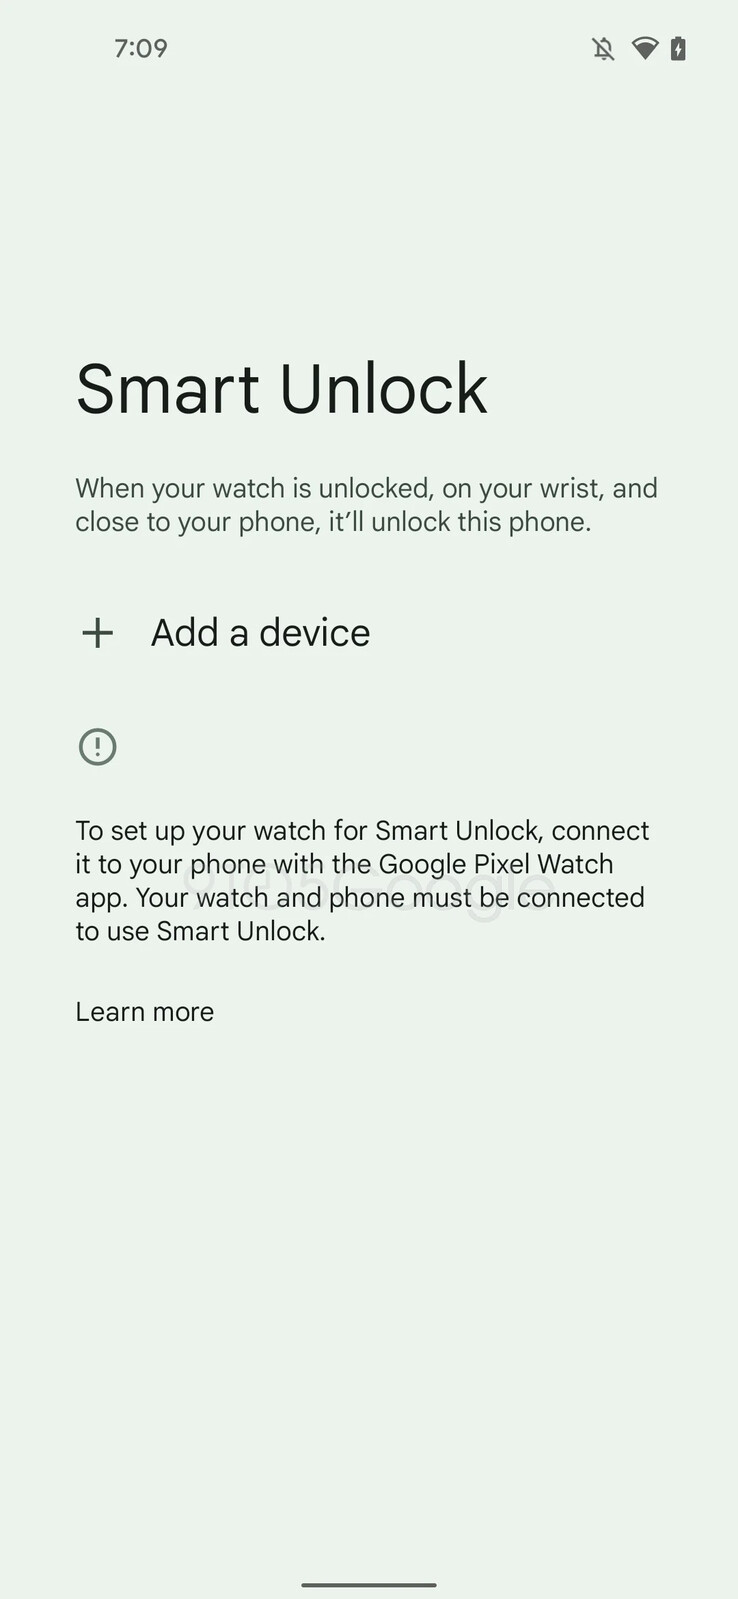 9to5Google's vermeende nieuwe Smart Unlock-schermen bevatten openlijke verwijzingen naar een speciale Pixel Watch-app. (Bron: 9to5Google)